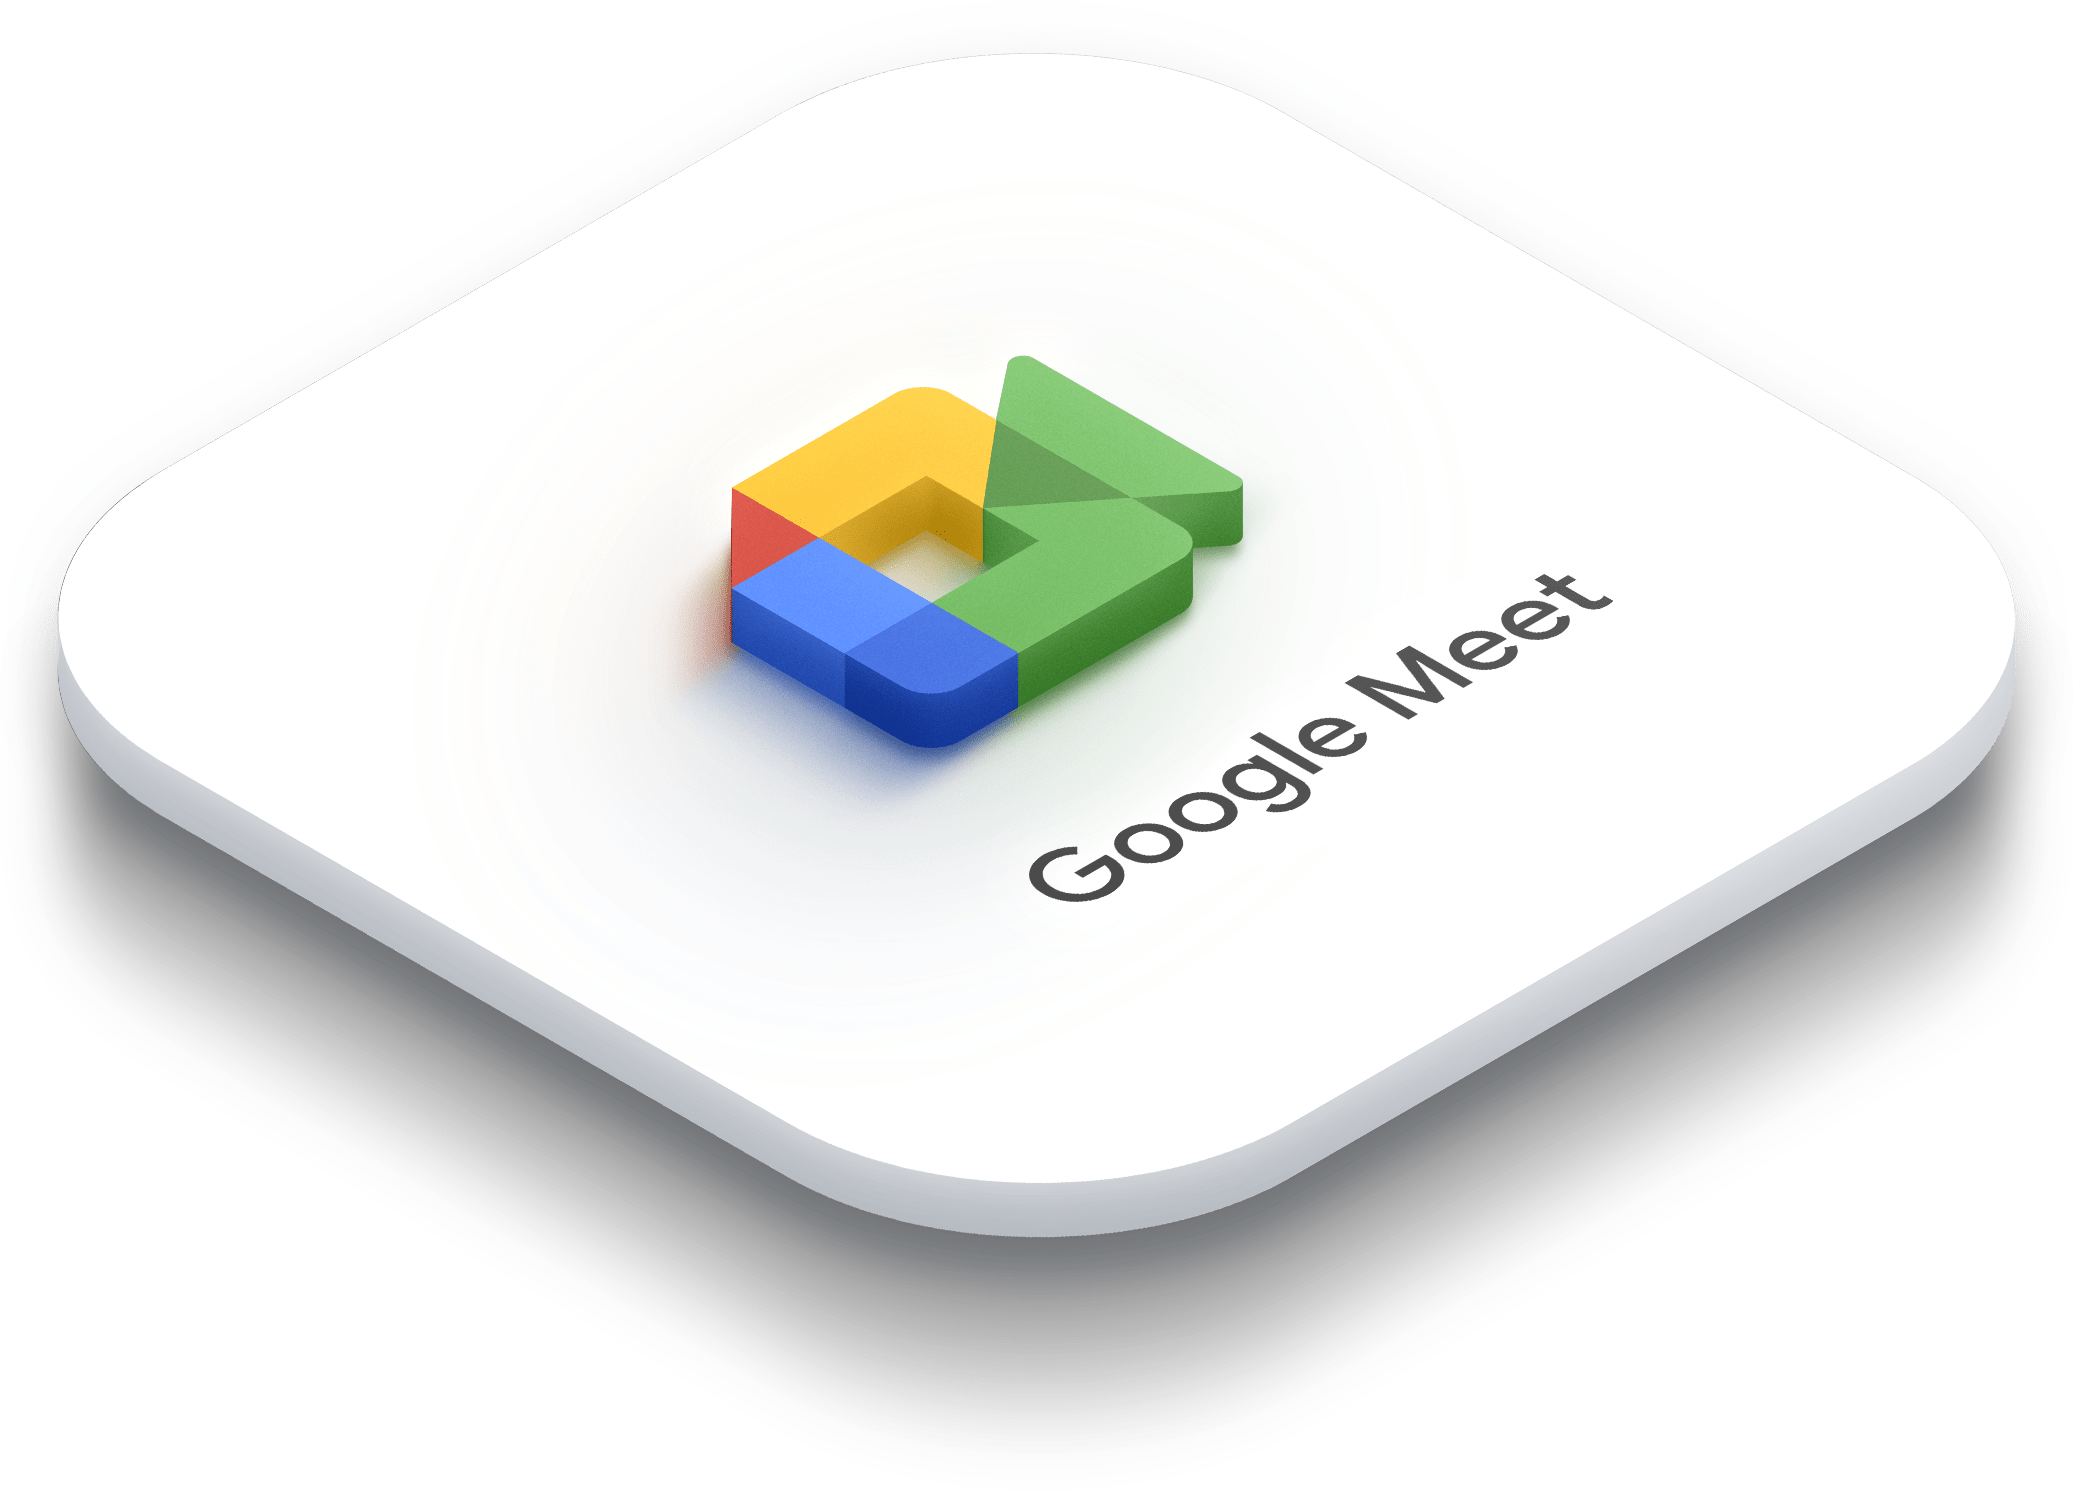 Google-Meet